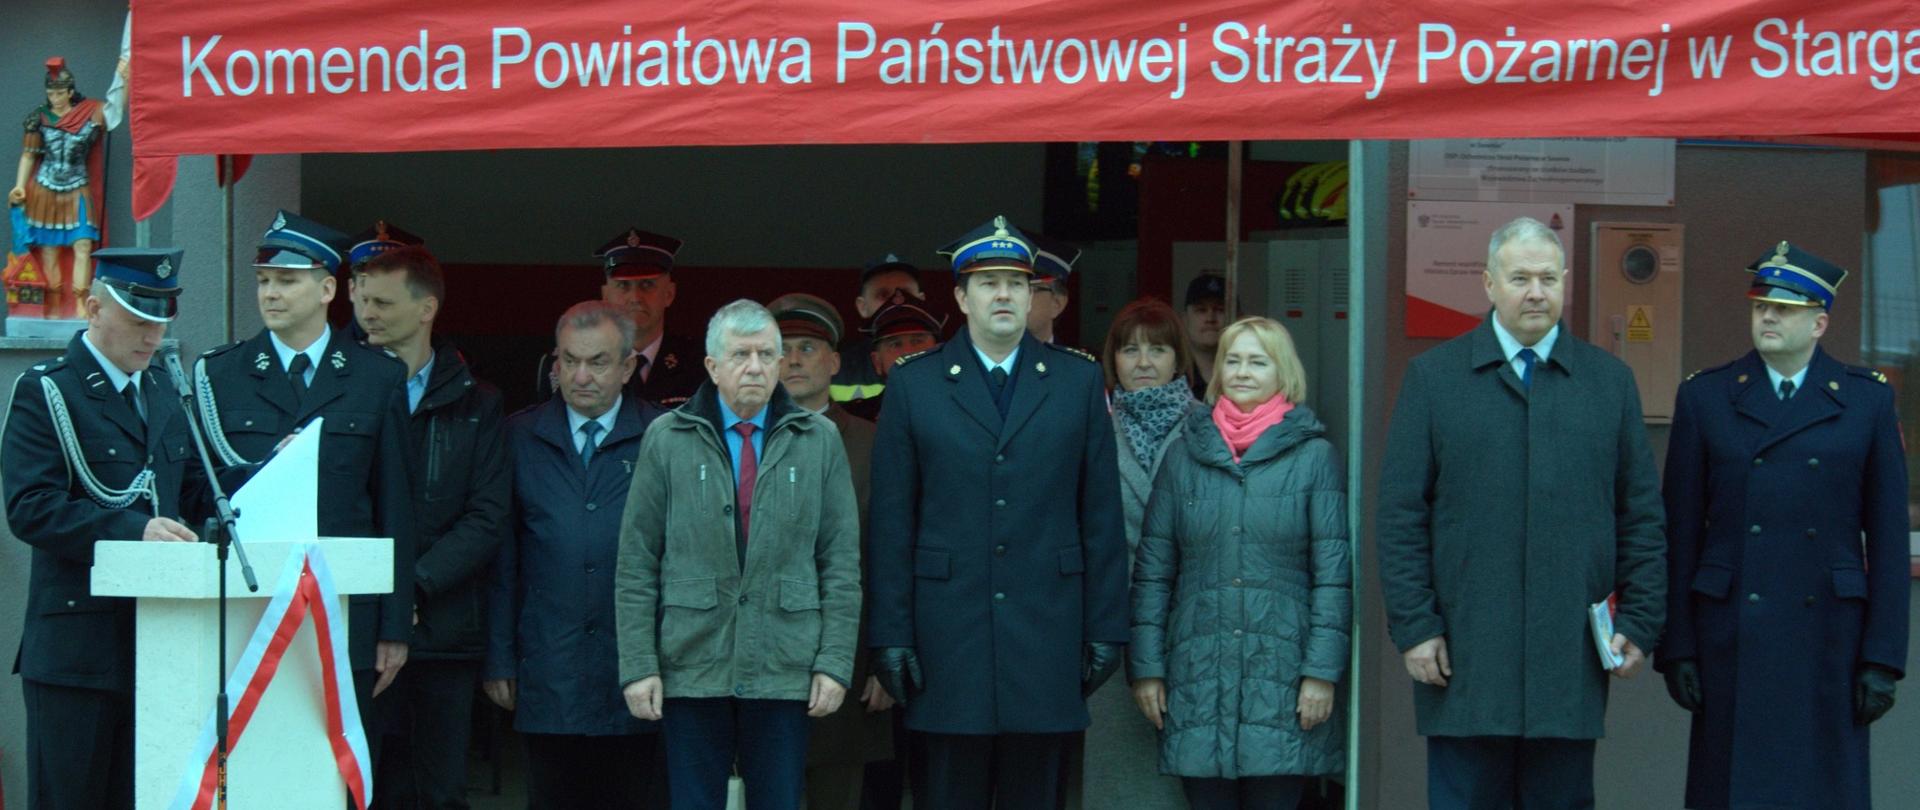 W pierwszy rzędzie od lewej Prezes OSP, Wicestarosta, Wójt, Poseł Jach, Z-ca KW, Z-ca Wójta, Poseł Dobrzyński, Komendant Powiatowy